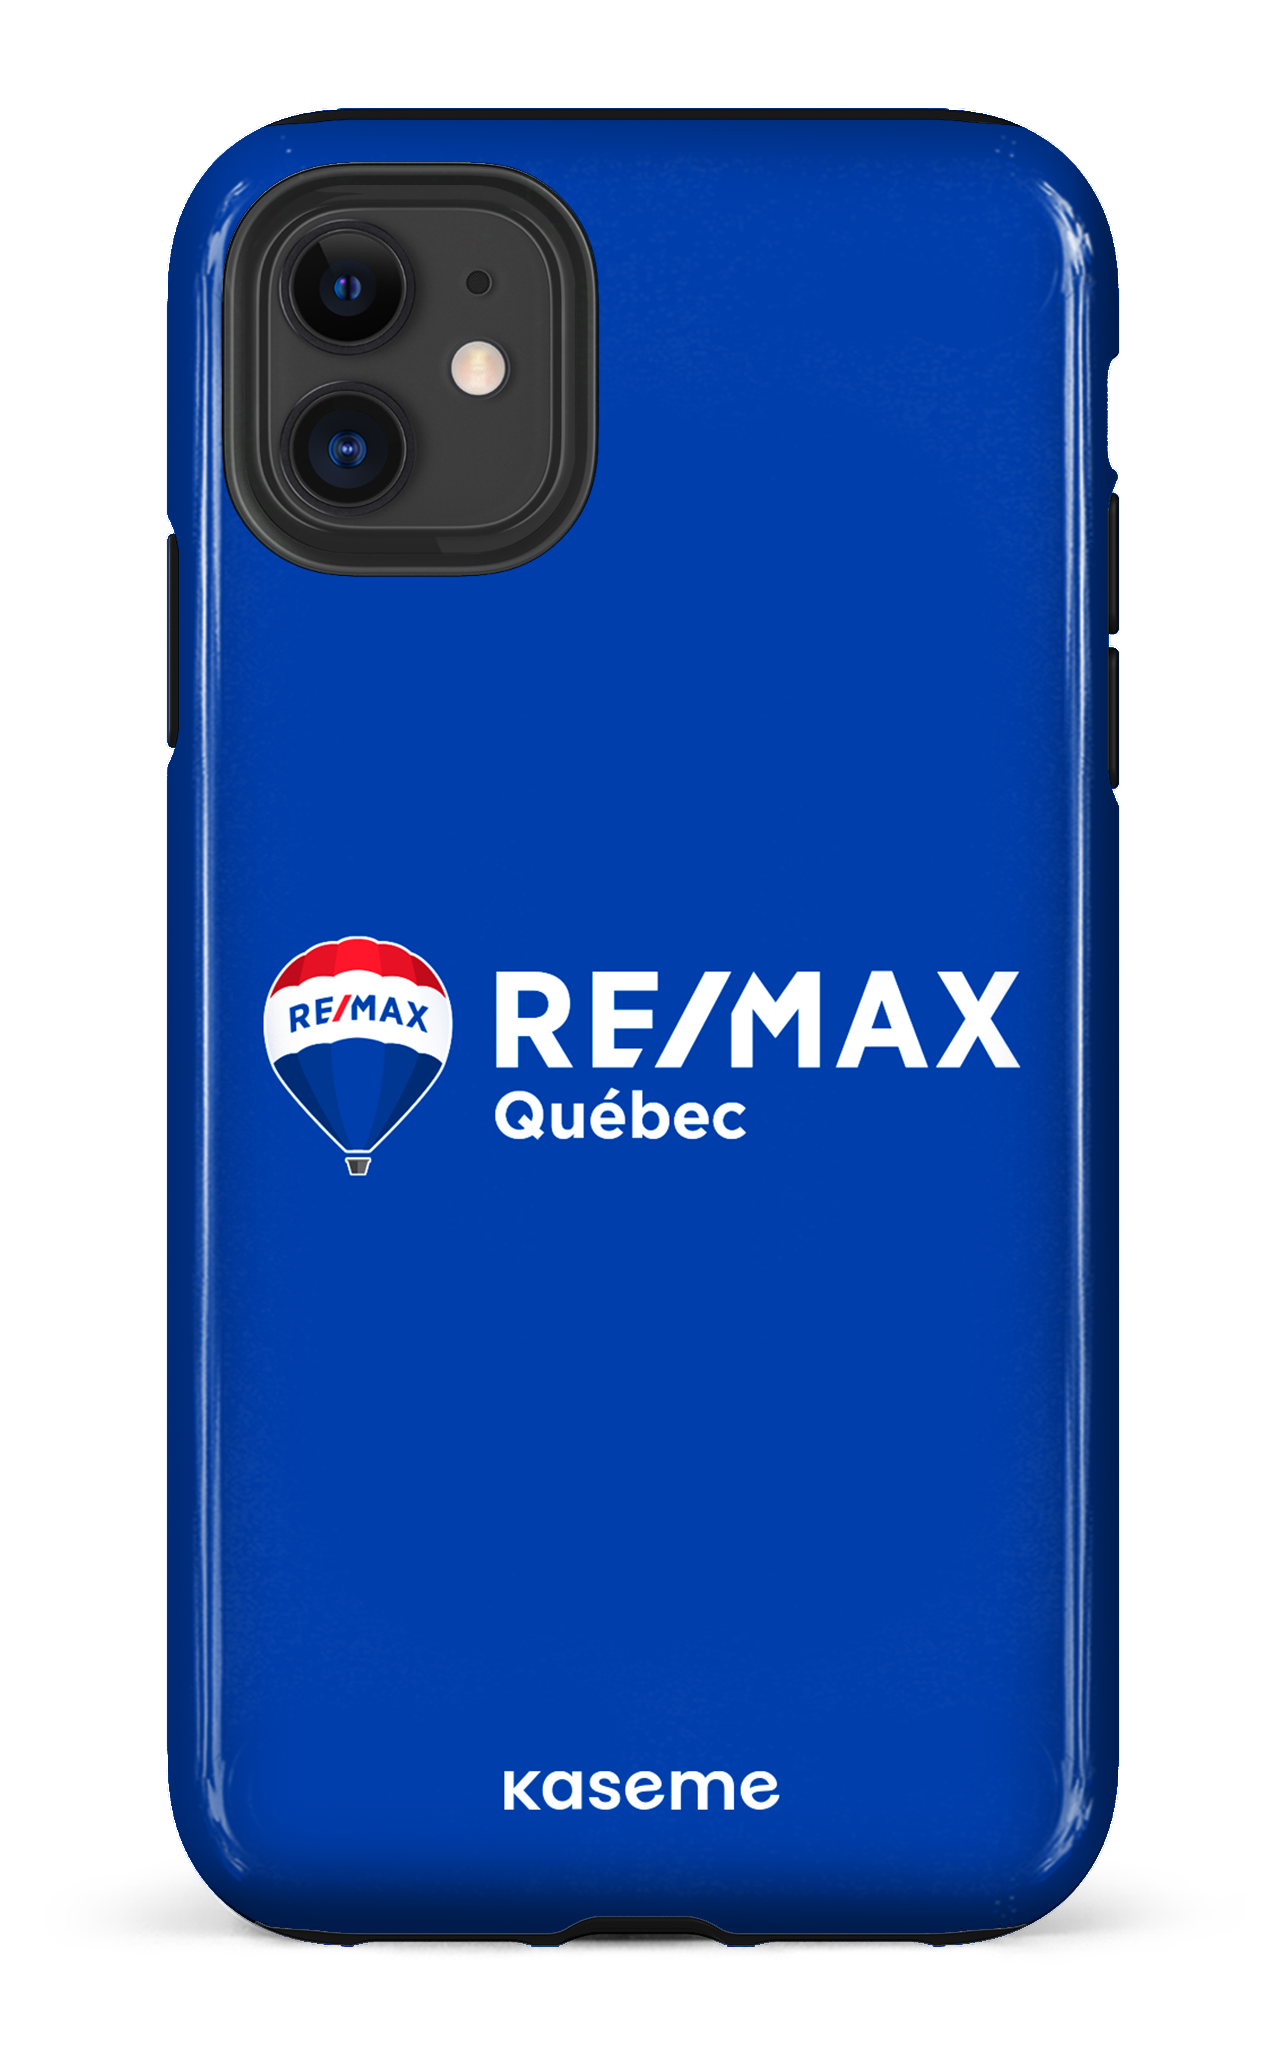 Remax Québec Bleu - iPhone 11